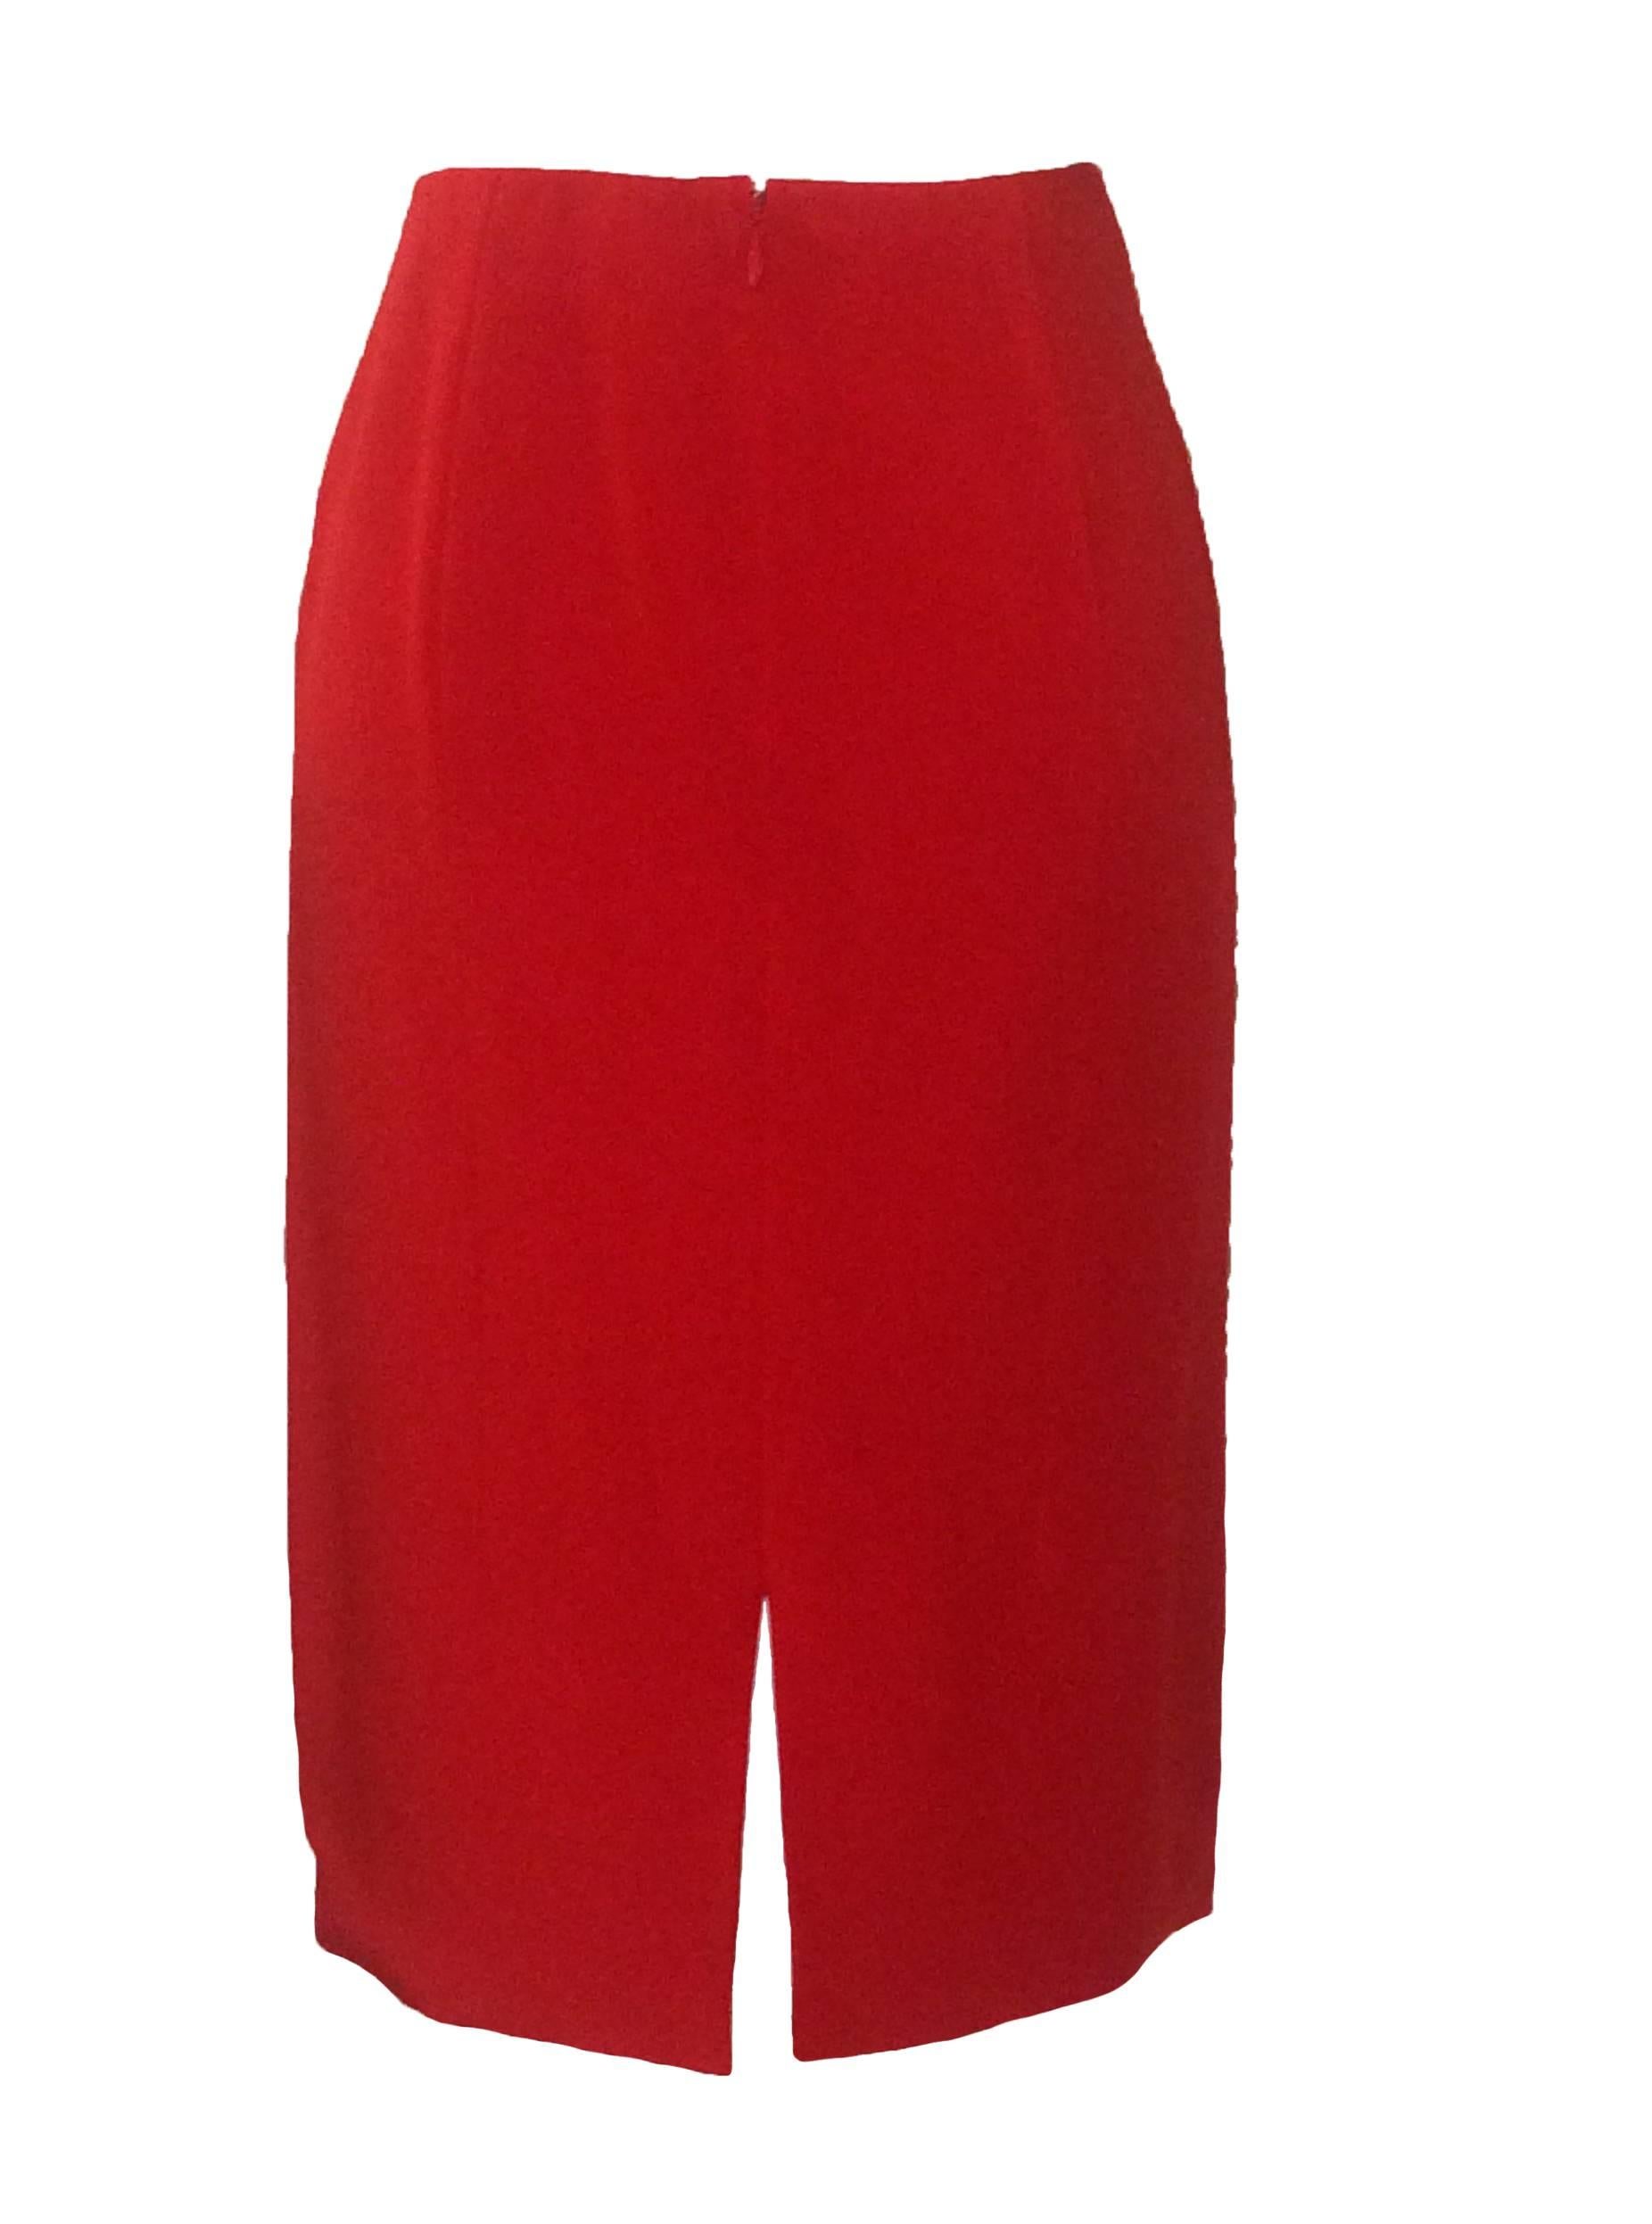 Women's Valentino Ruffle Skirt Suit in Lipstick Red 